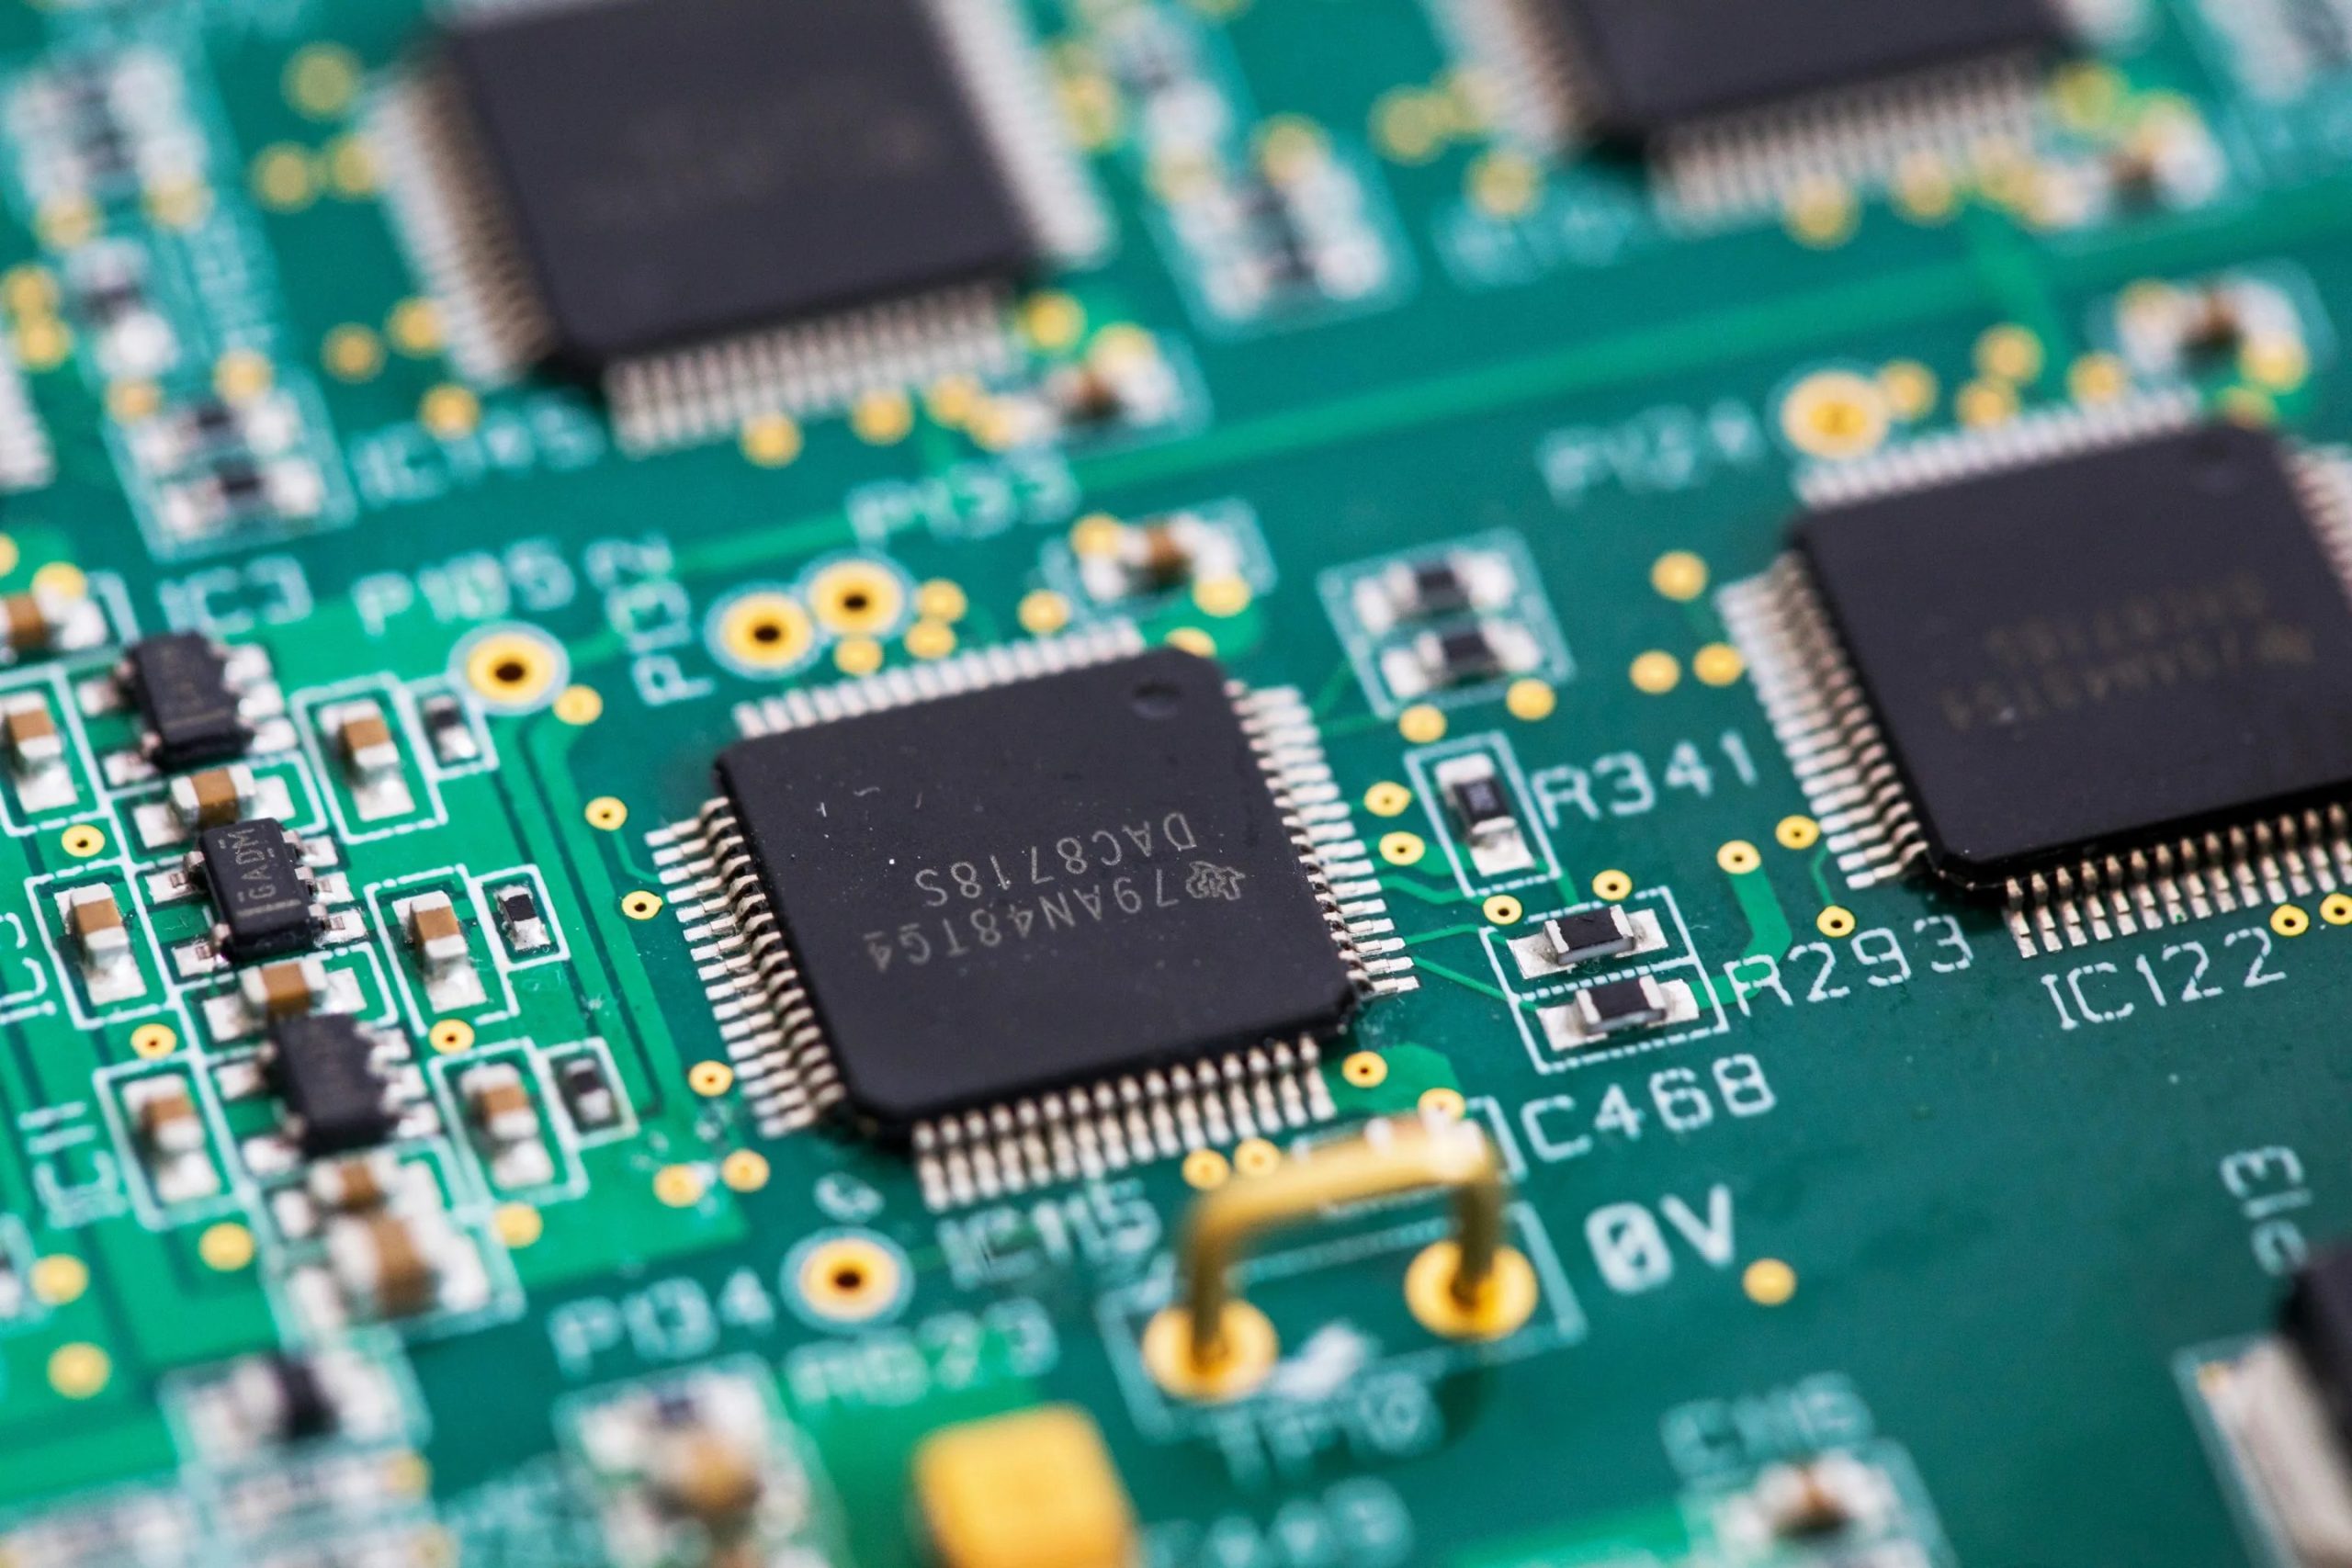 SUA revine pe piața semiconductorilor! Investește peste 50 de miliarde în retehnologizarea industriei